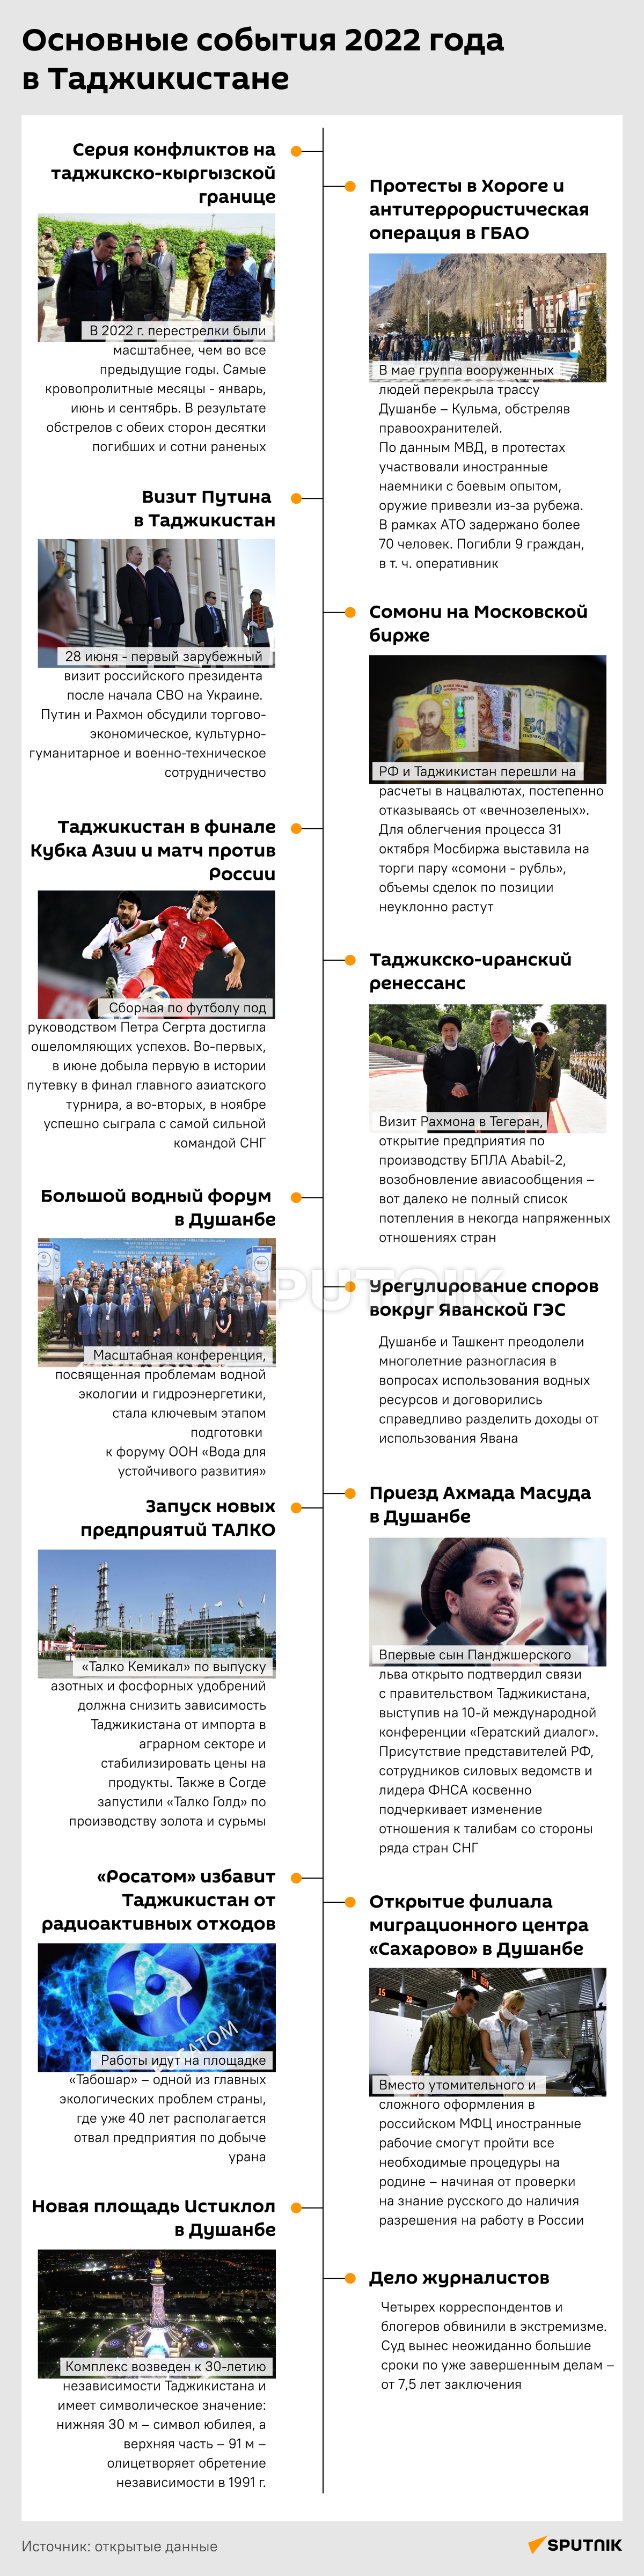 Основные события 2022 года в Таджикистане - Sputnik Таджикистан